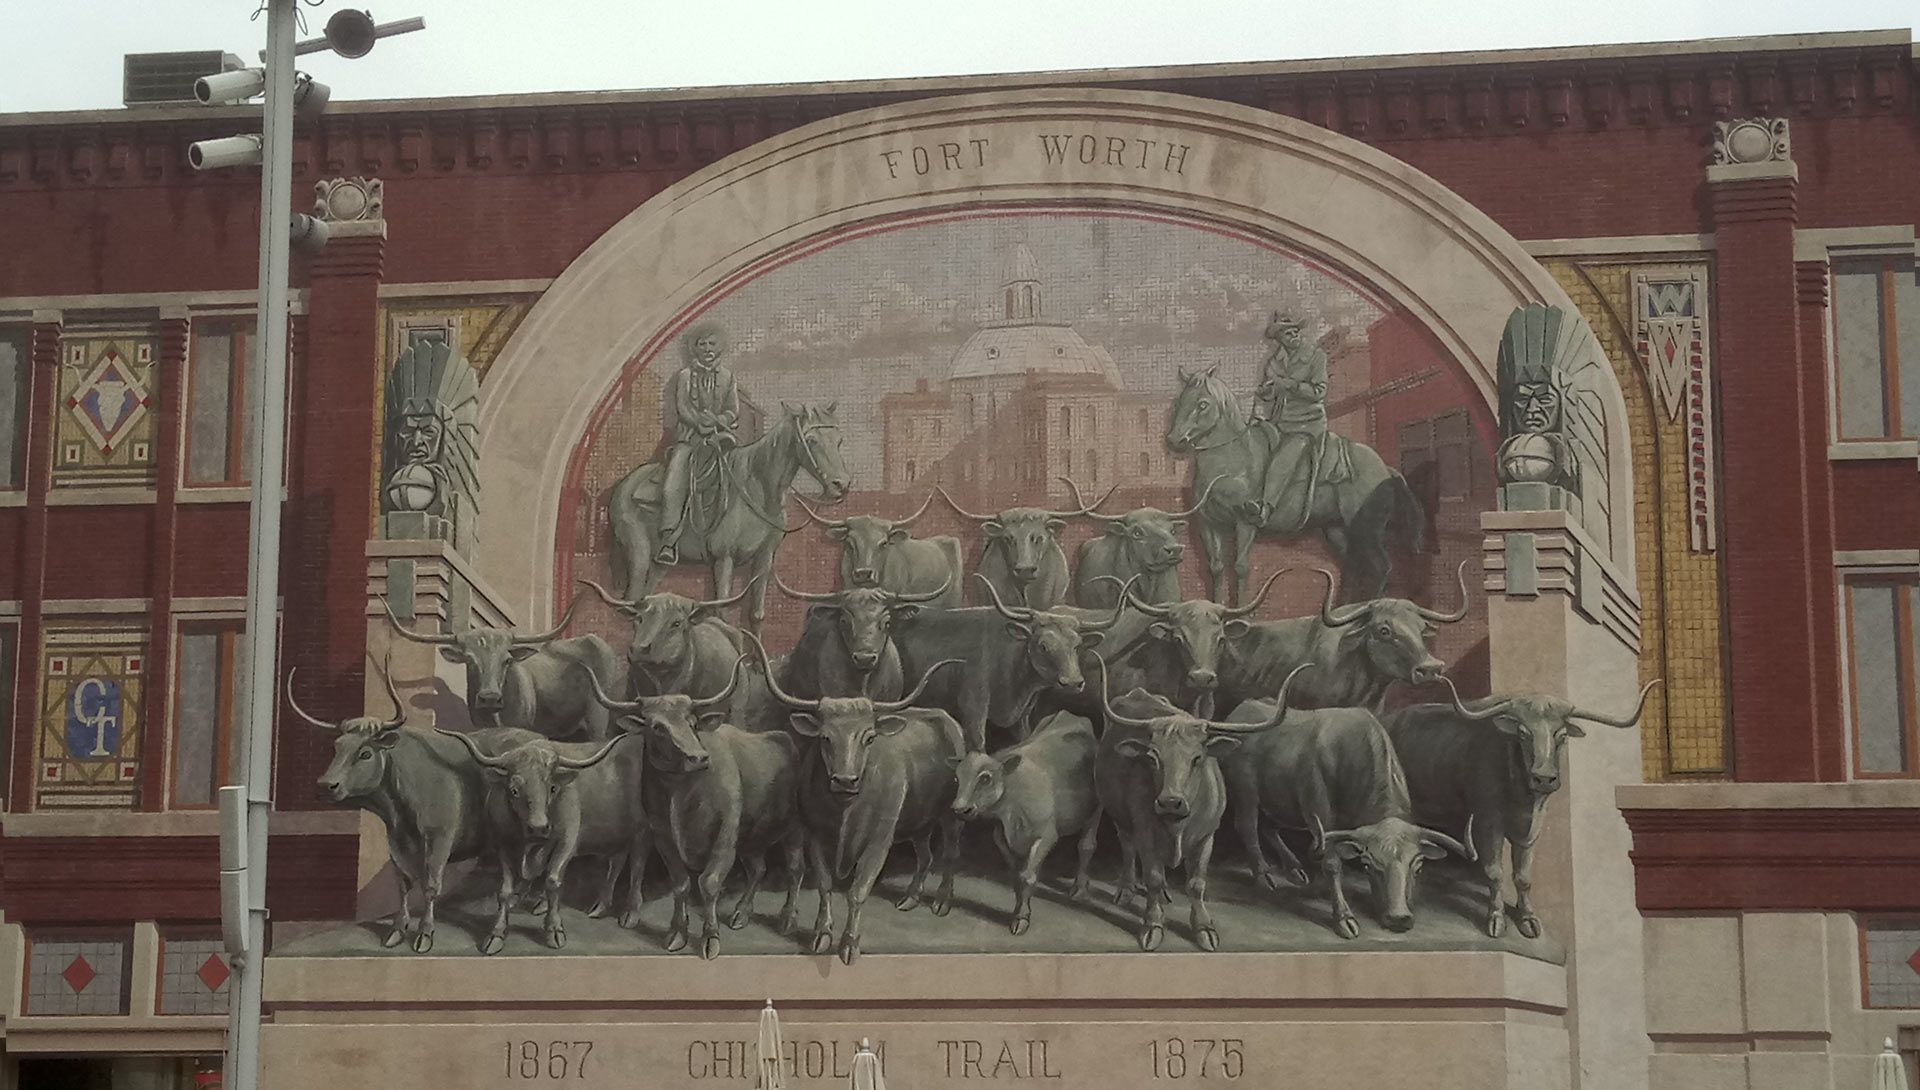 Chisholm Trail Fort Worth, Geschichte Texas Longhorn